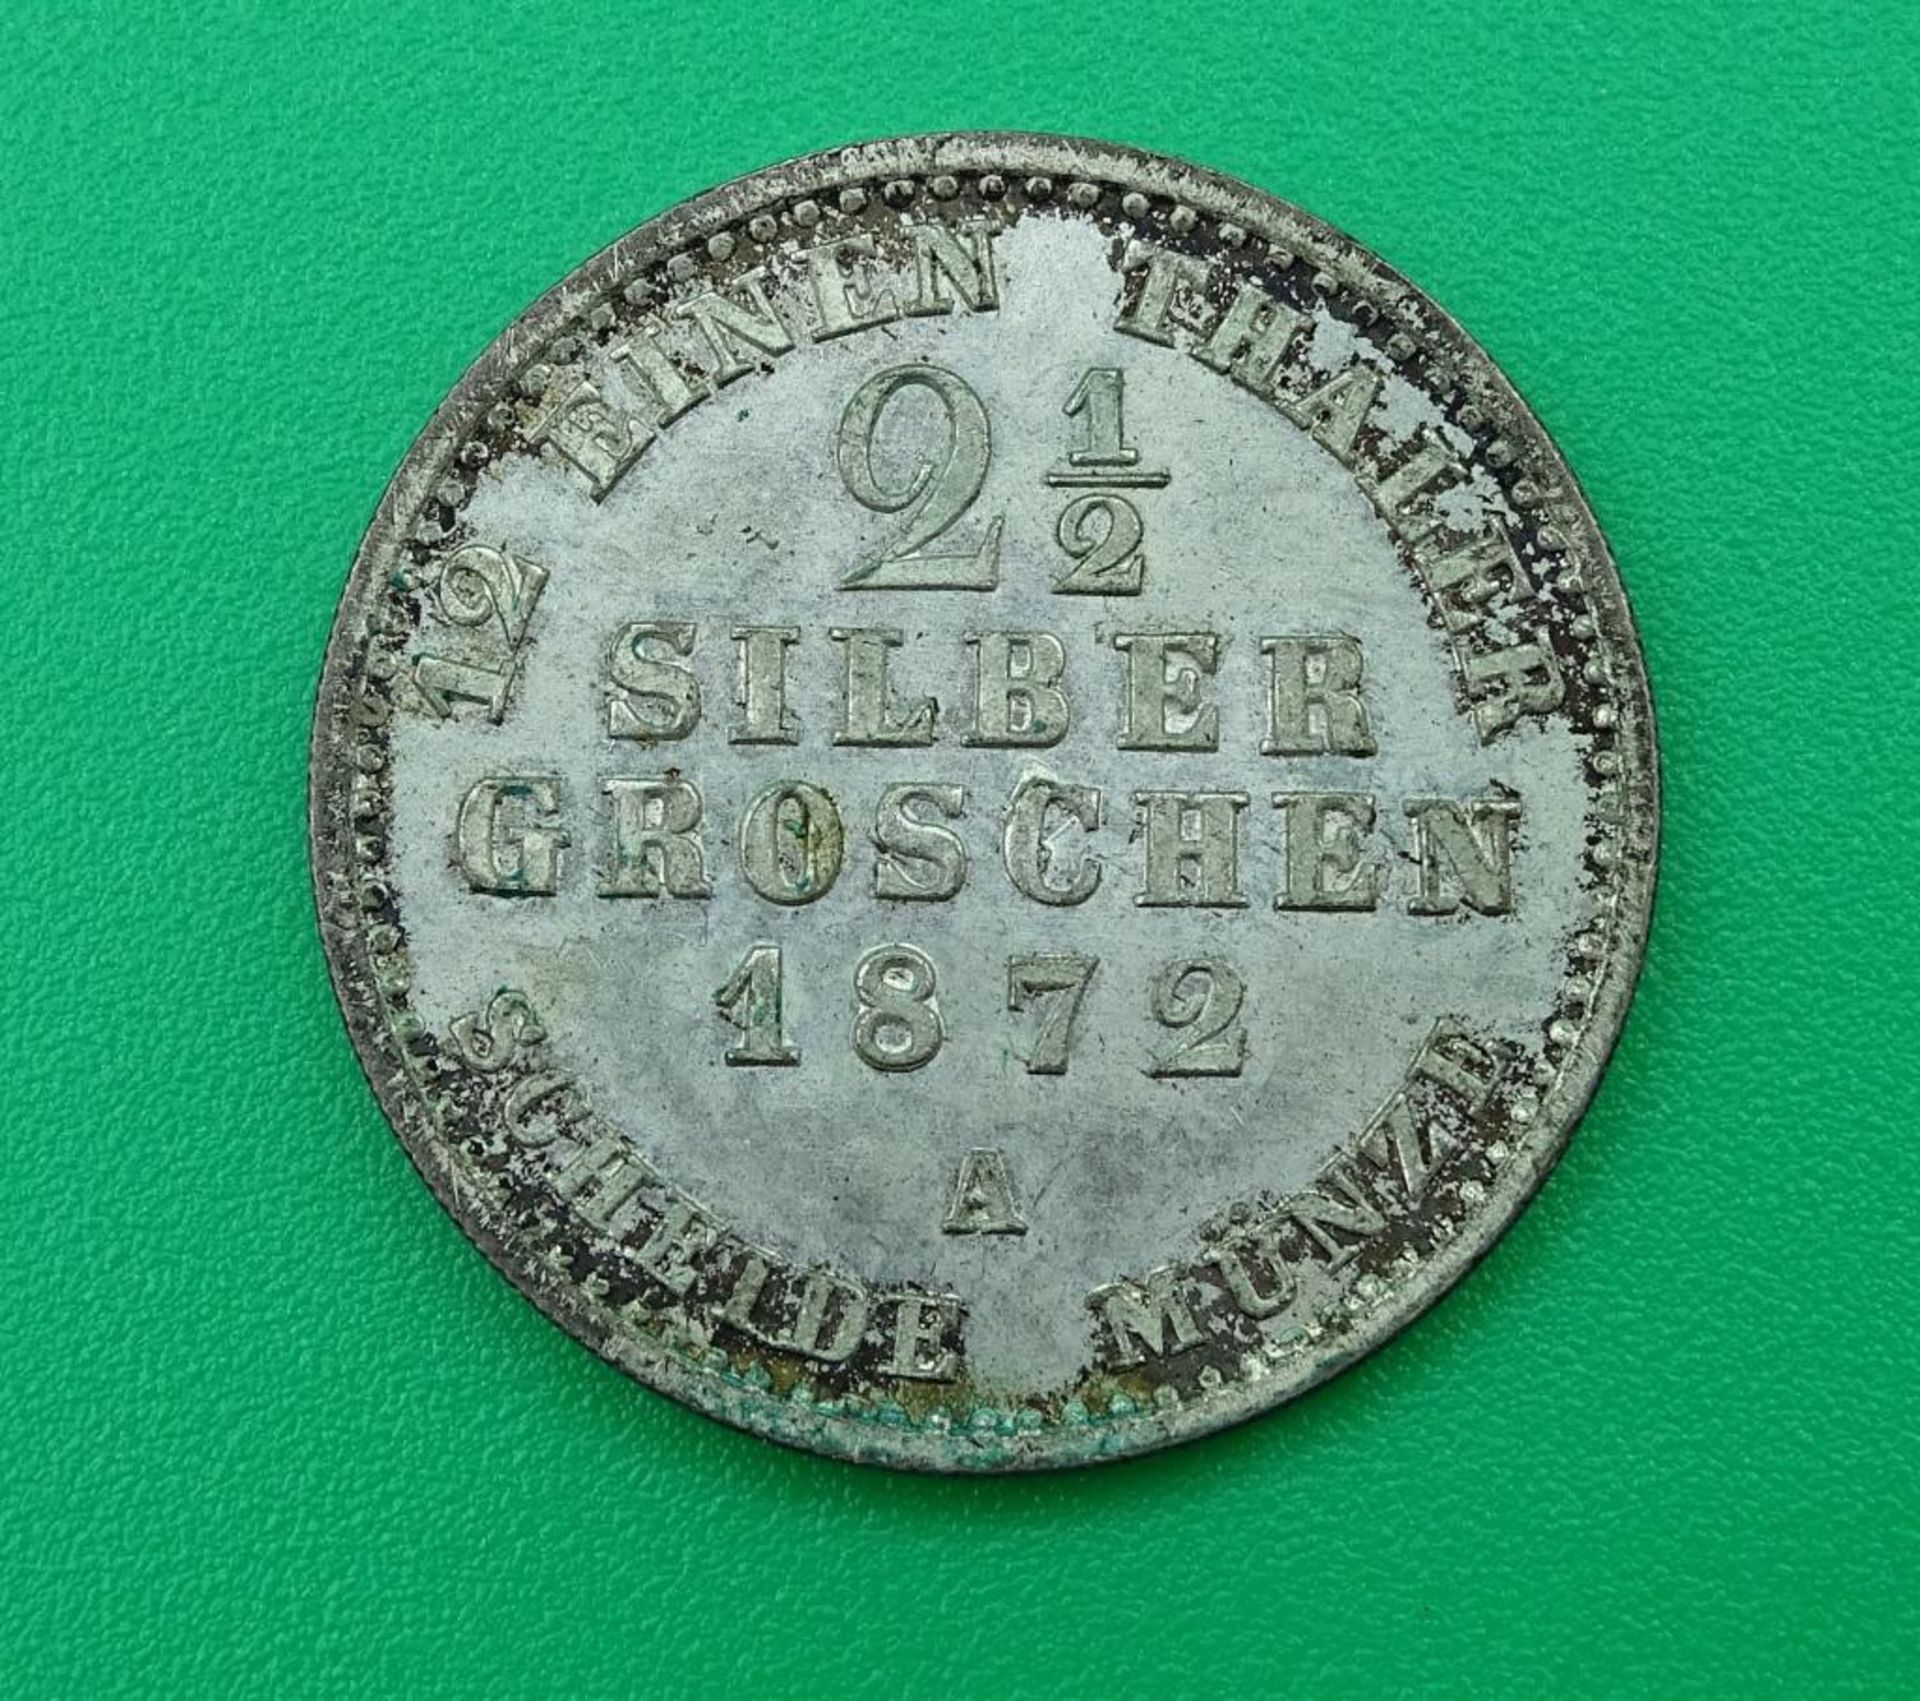 2 1/2 Silber Groschen,1872 A, König v.Preussen,feinster Stempelglan